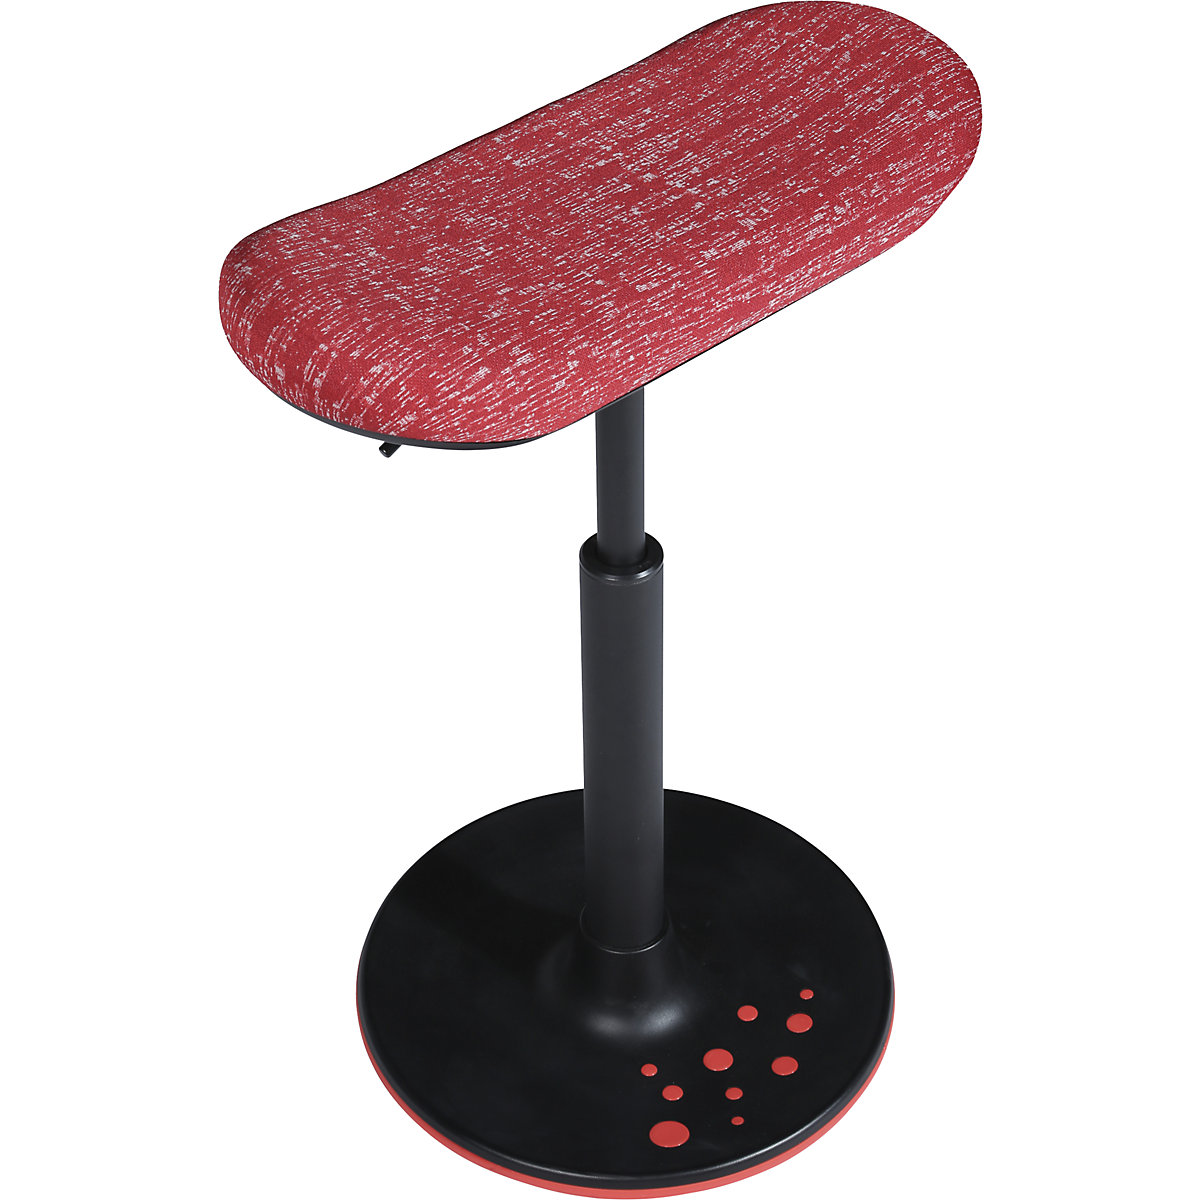 Sgabello SITNESS H – Topstar, modello H2, con sedile allungato, rivestimento rosso fantasia, base rossa-6